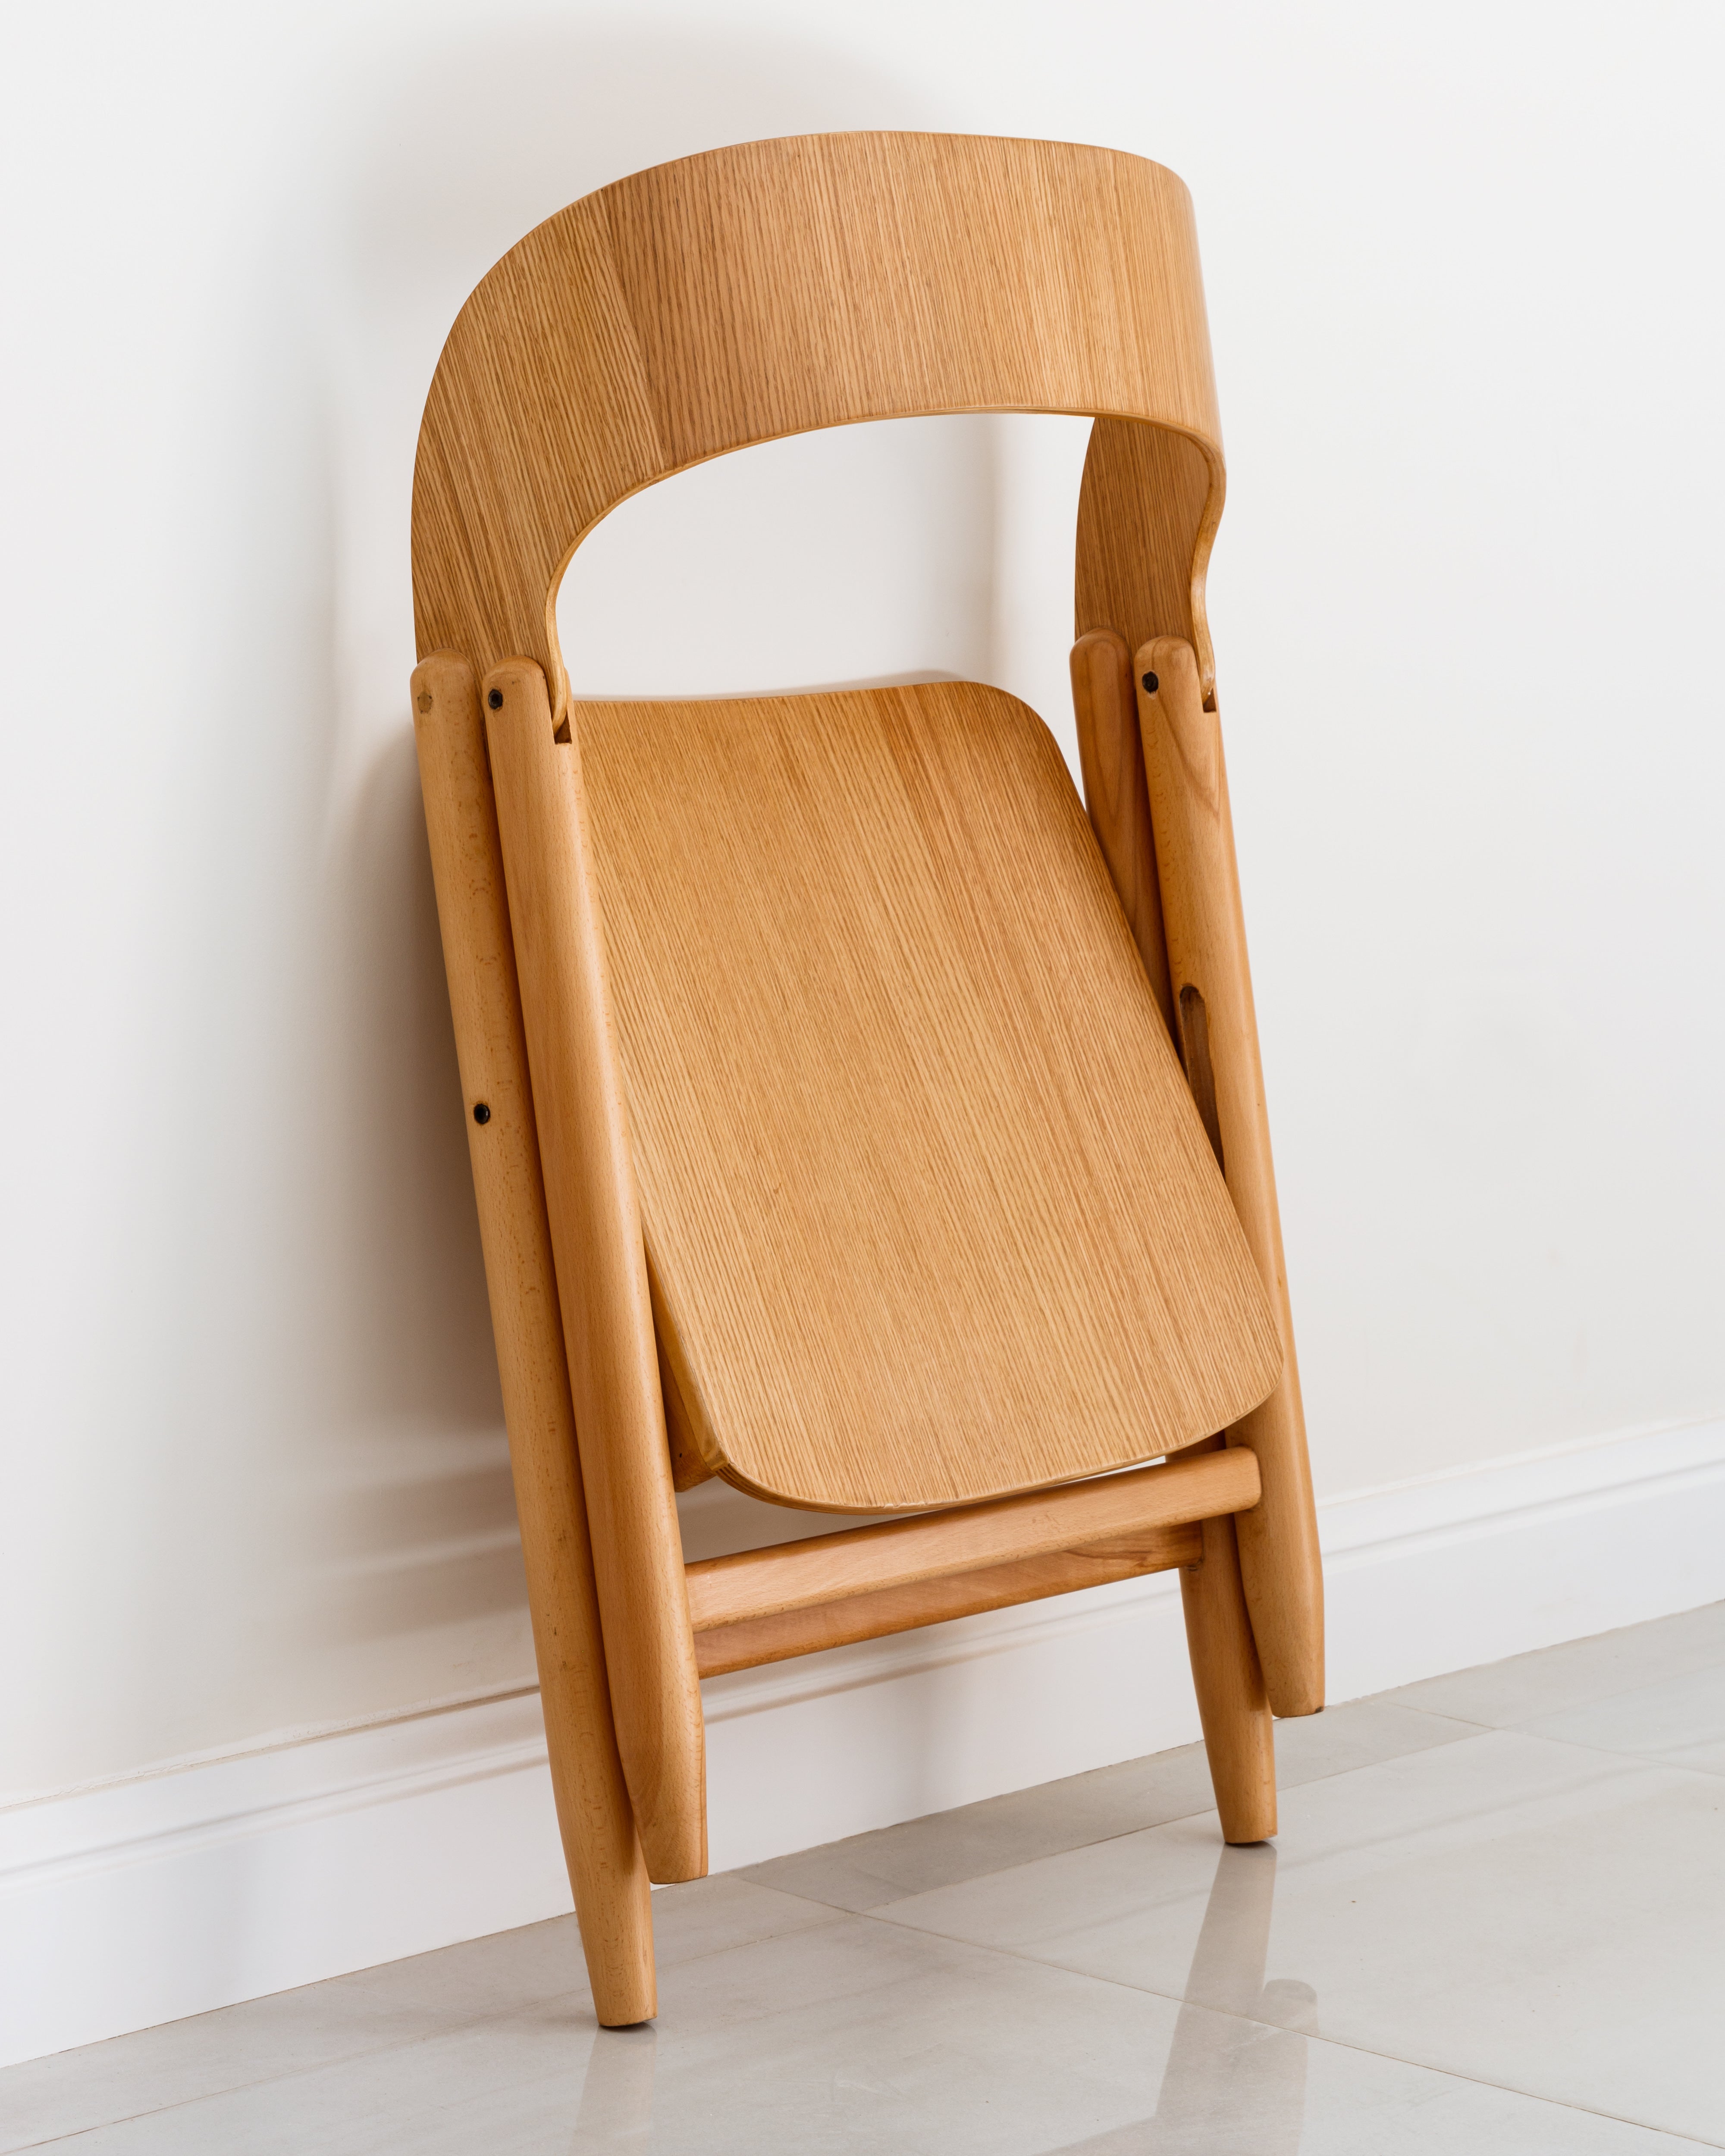 The Folde Chair